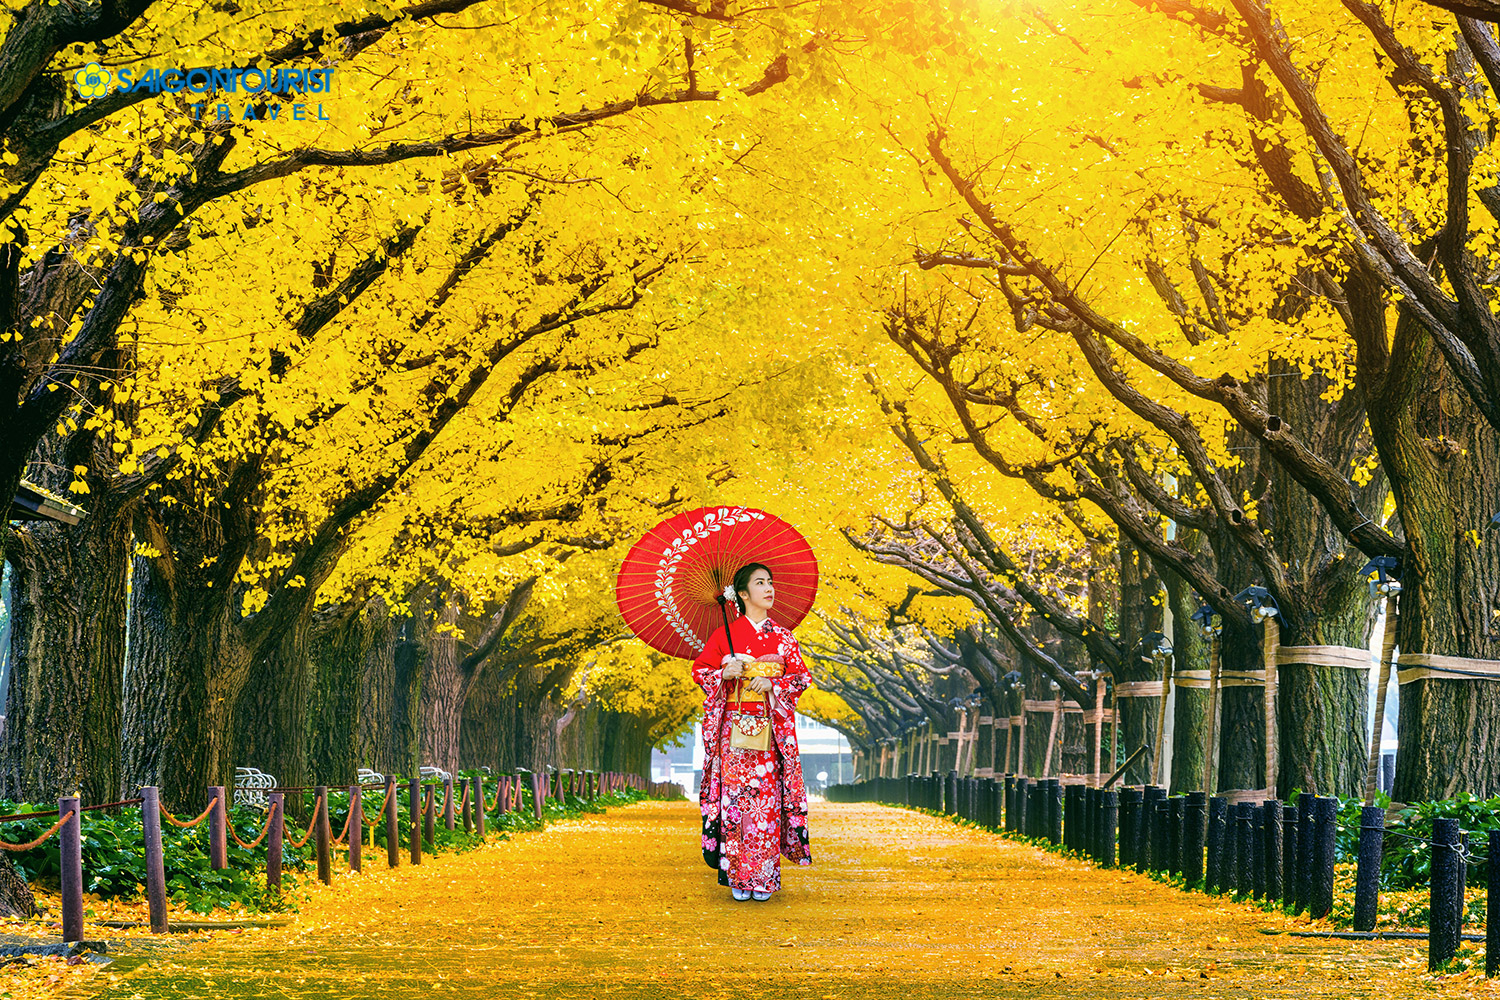 Du lịch Nhật Bản [HÀNH TRÌNH VÀNG] (OSAKA – NARA - KYOTO - FUJI - TOKYO) trải nghiệm mùa thu sắc màu